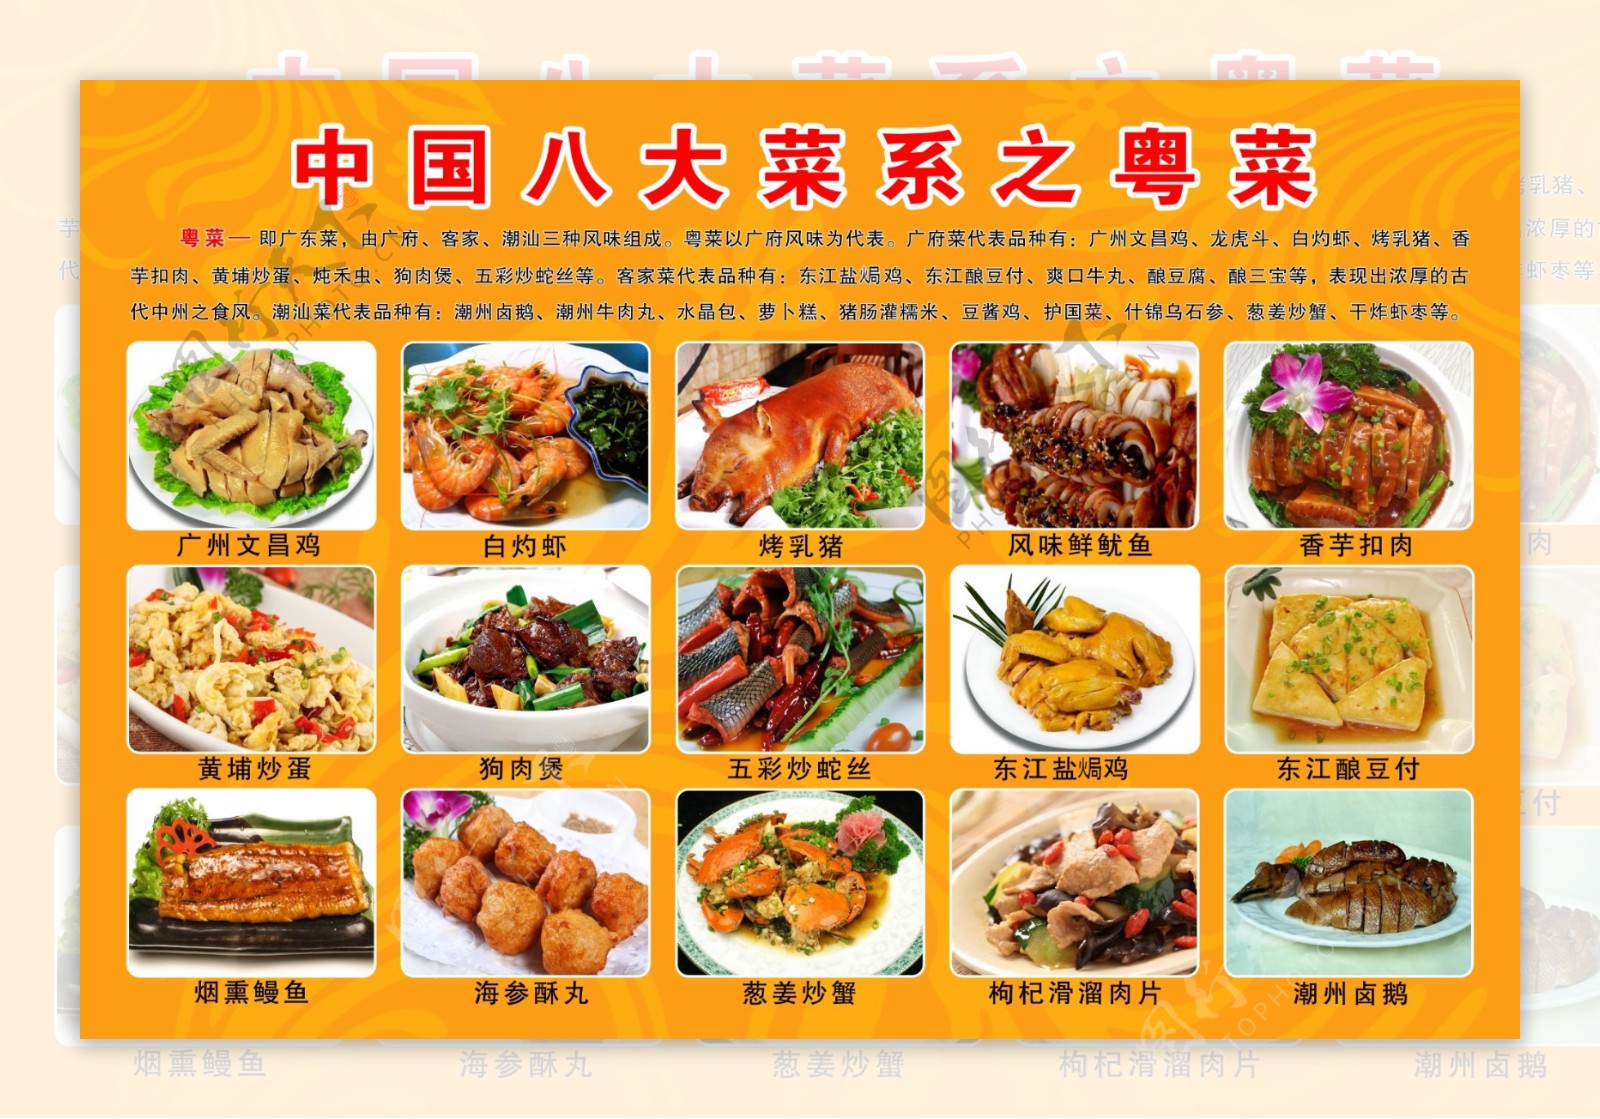 中国八大菜系之粤菜图片